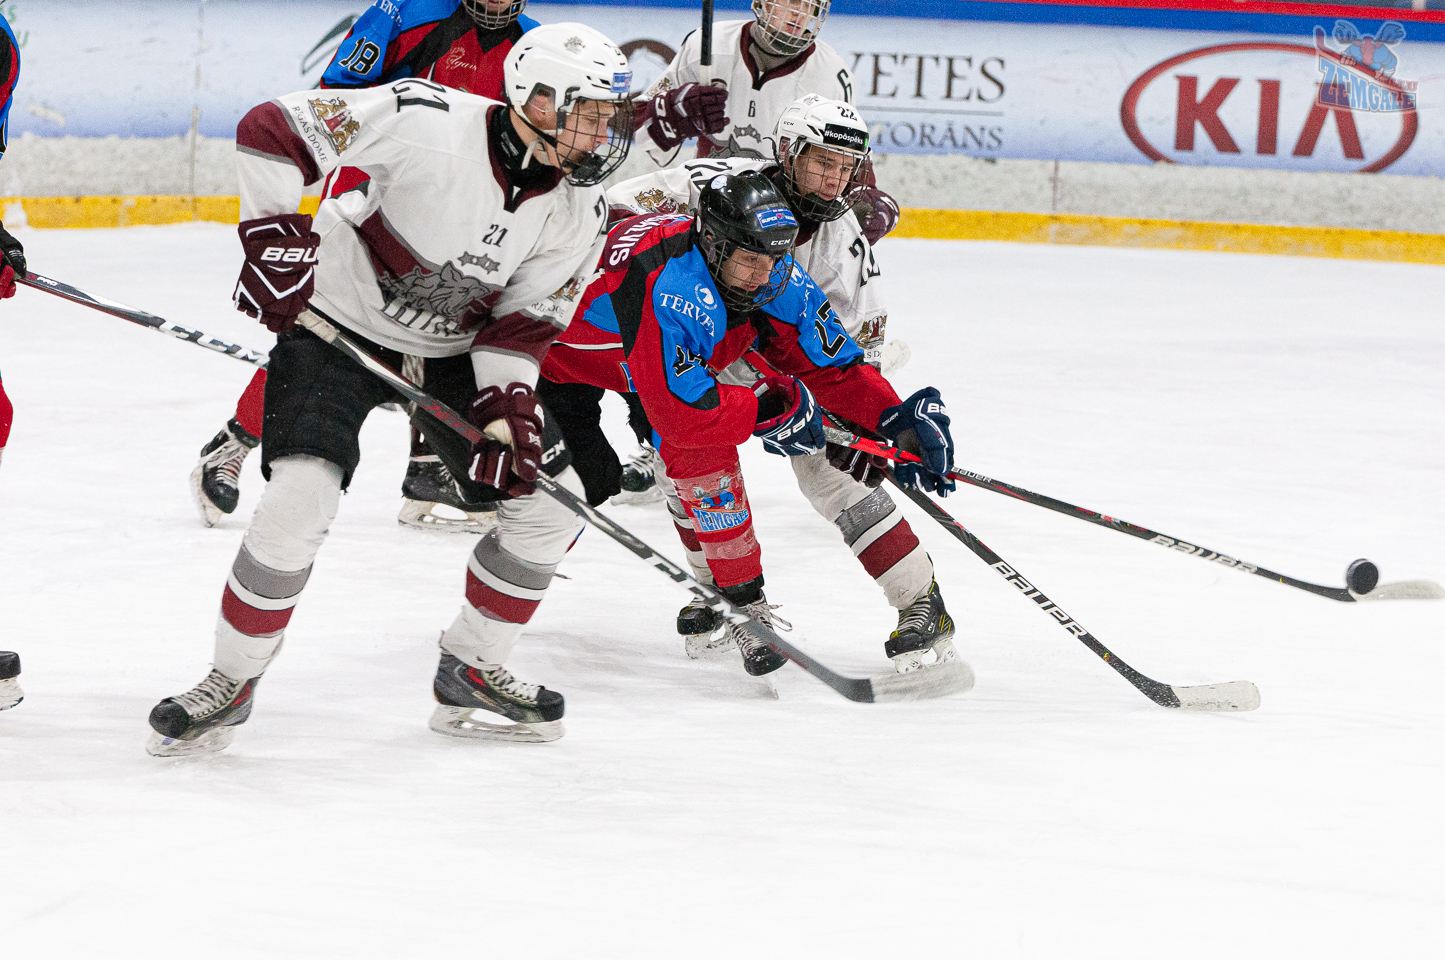 Latvijas bērnu un jauniešu hokeja čempionāta (LBJČH) U-17 vecuma grupas regulārā spēle starp “JLSS U17” un HS “Rīga 2004” Jelgavas ledus hallē 2020. gada 5. janvārī | Foto: Ruslans Antropovs / rusantro.com